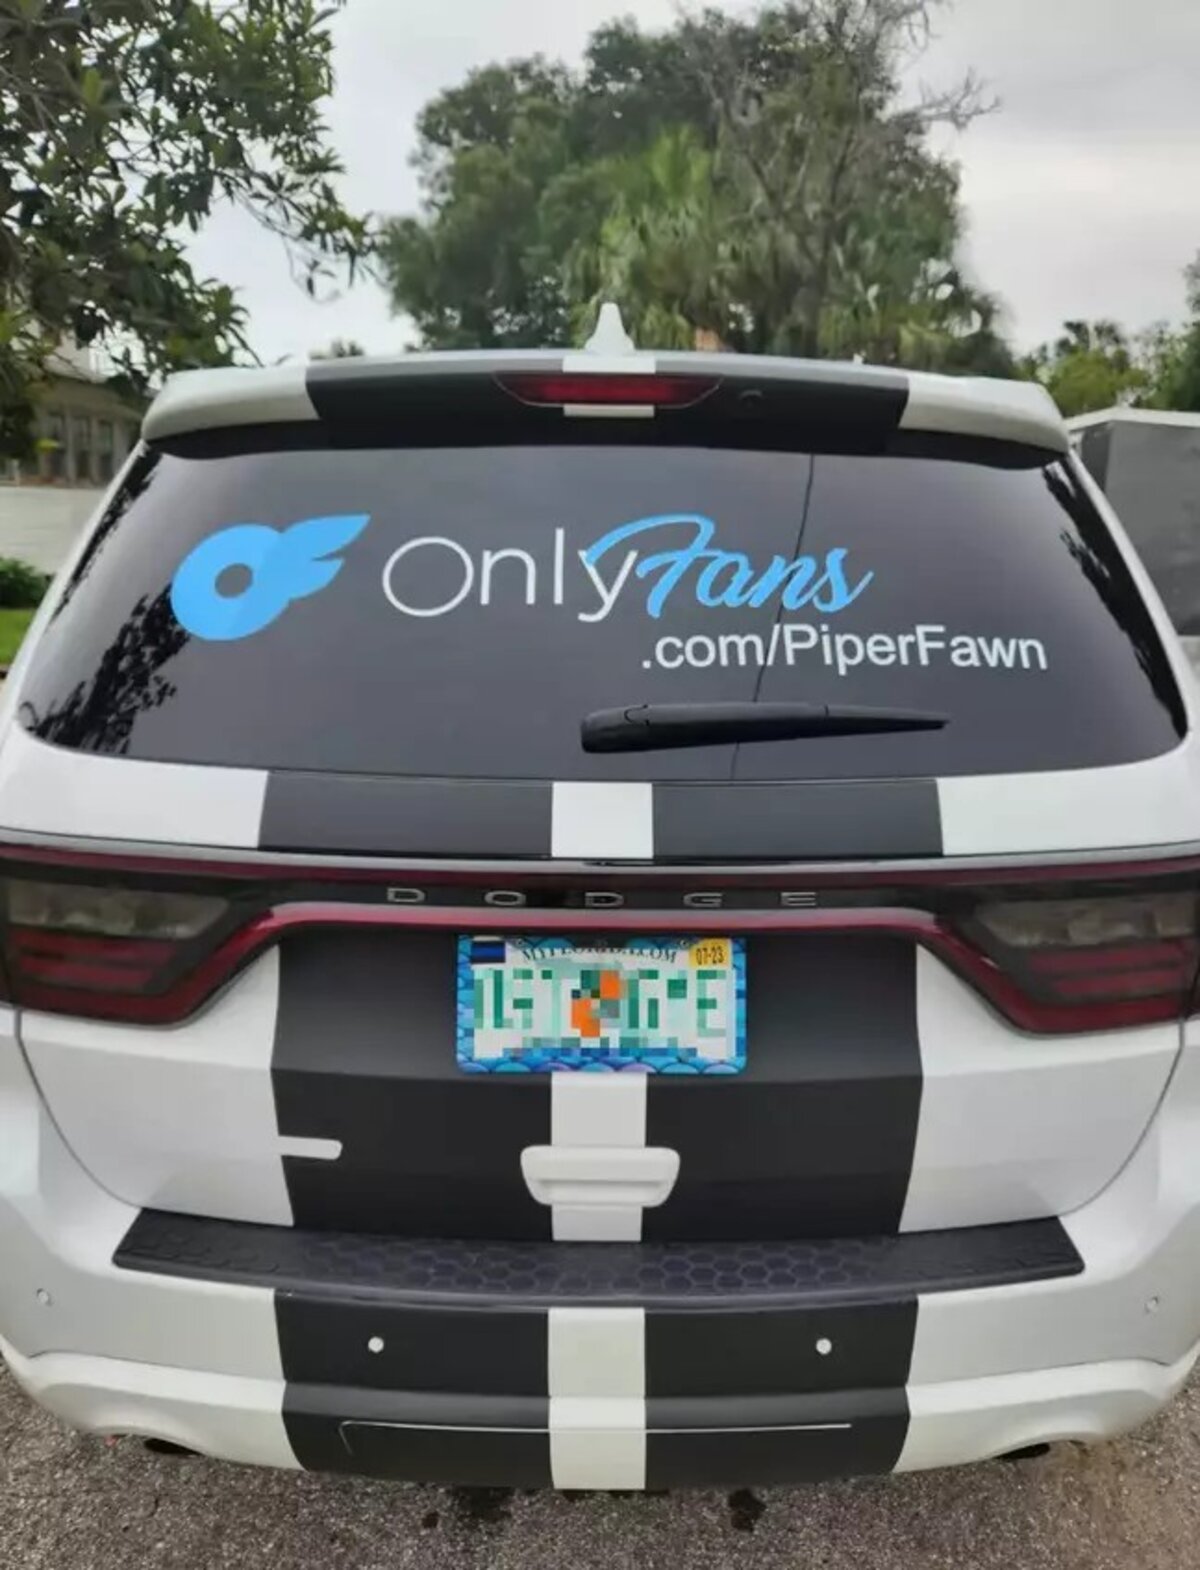 A 35 éves floridai szülő OnlyFans hirdetése saját autóján